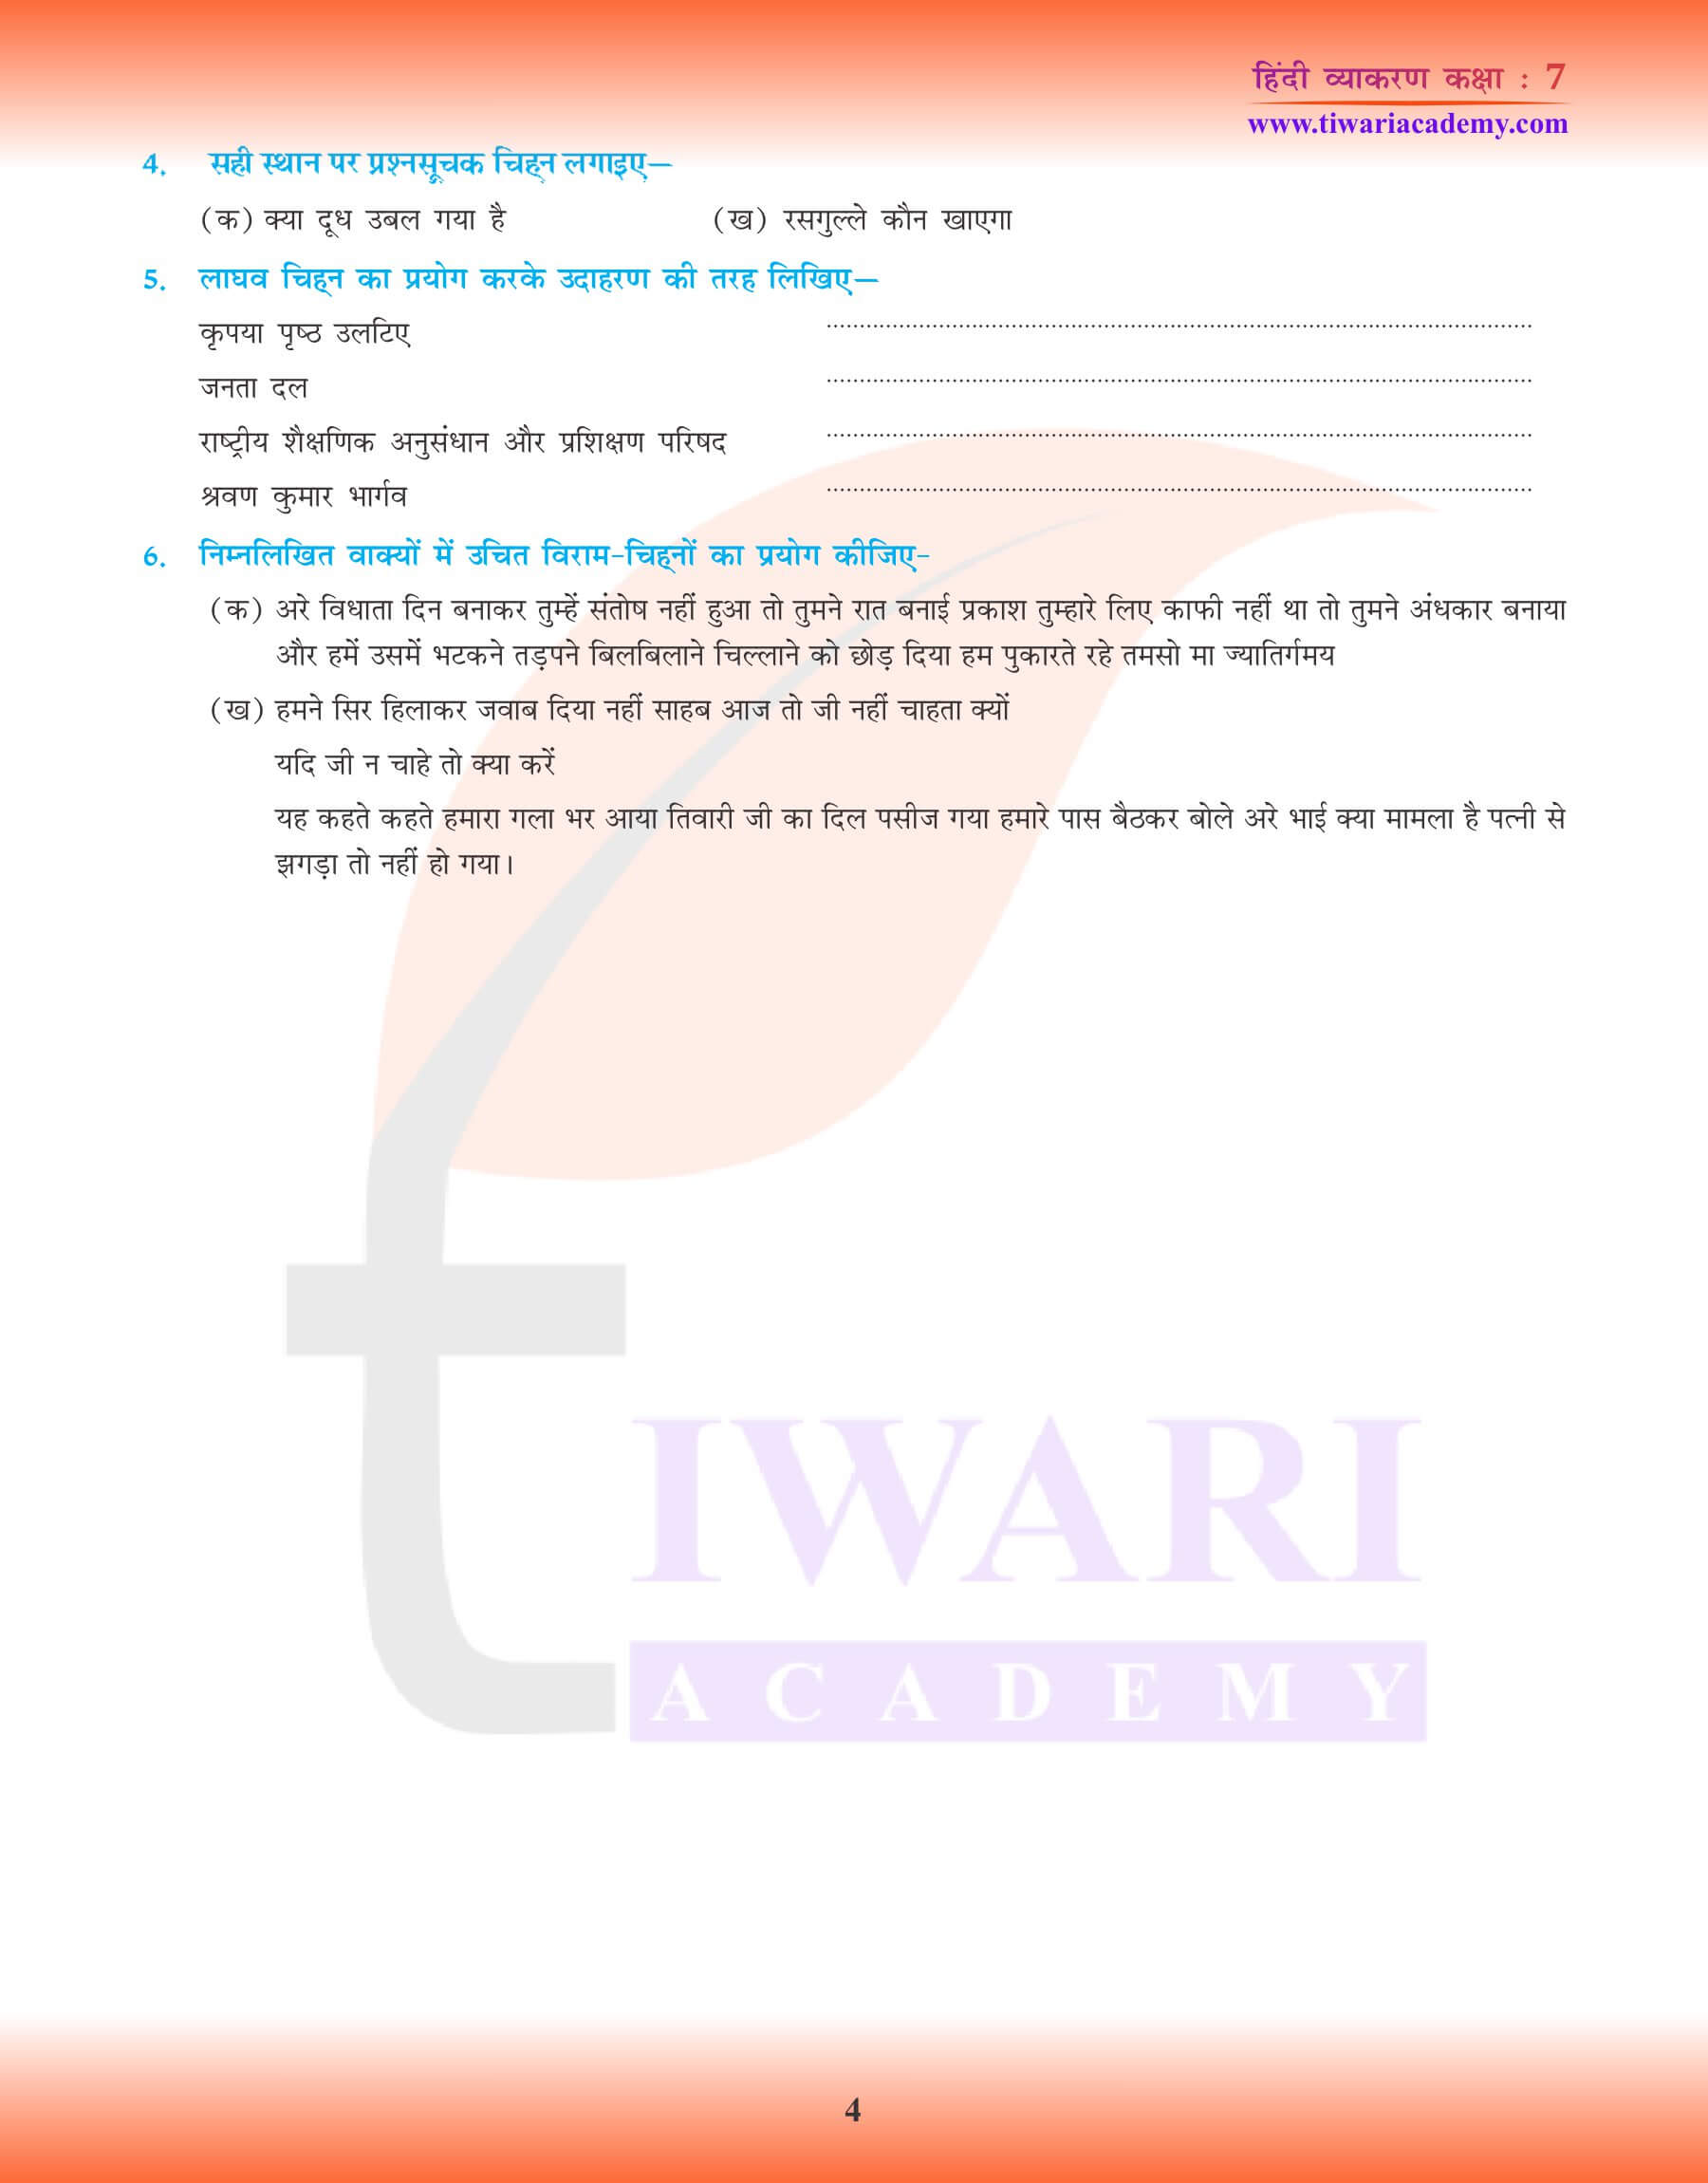 कक्षा 7 हिंदी व्याकरण विराम चिह्न के उपयोग